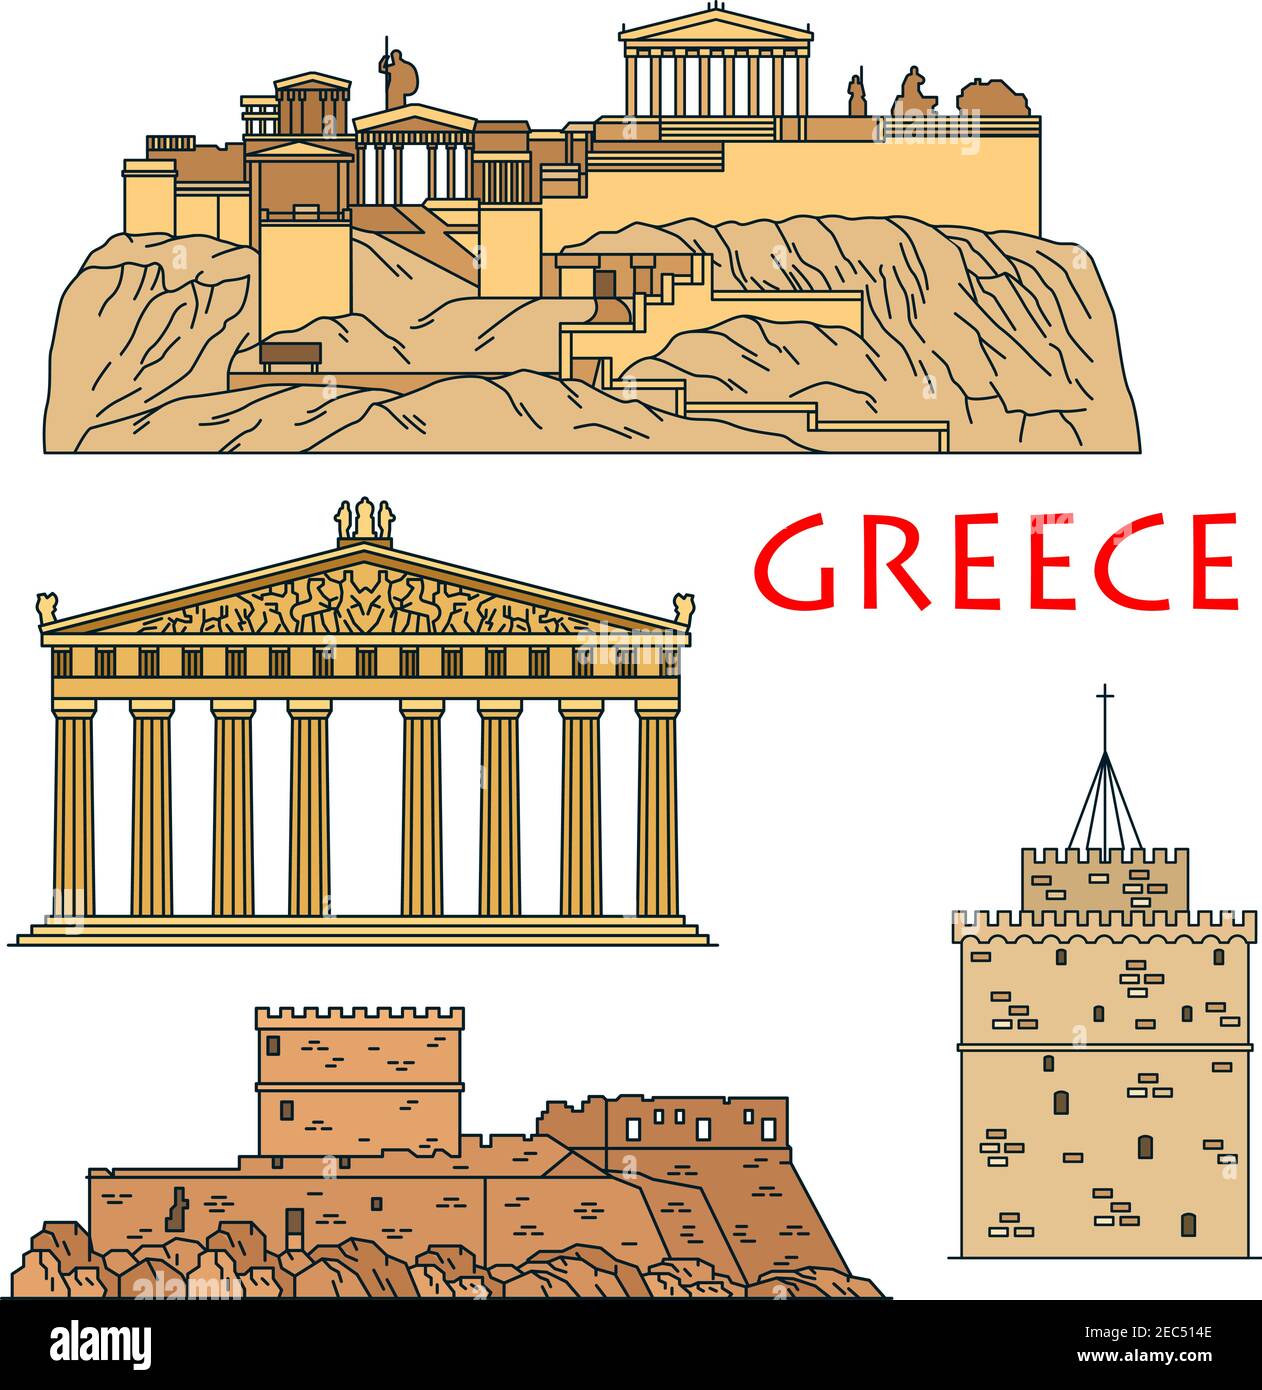 Célèbres héritages architecturaux de Grèce icône avec l'Acropole linéaire colorée d'Athènes avec temple de la déesse Athena Parthénon, château gothique médiéval Illustration de Vecteur